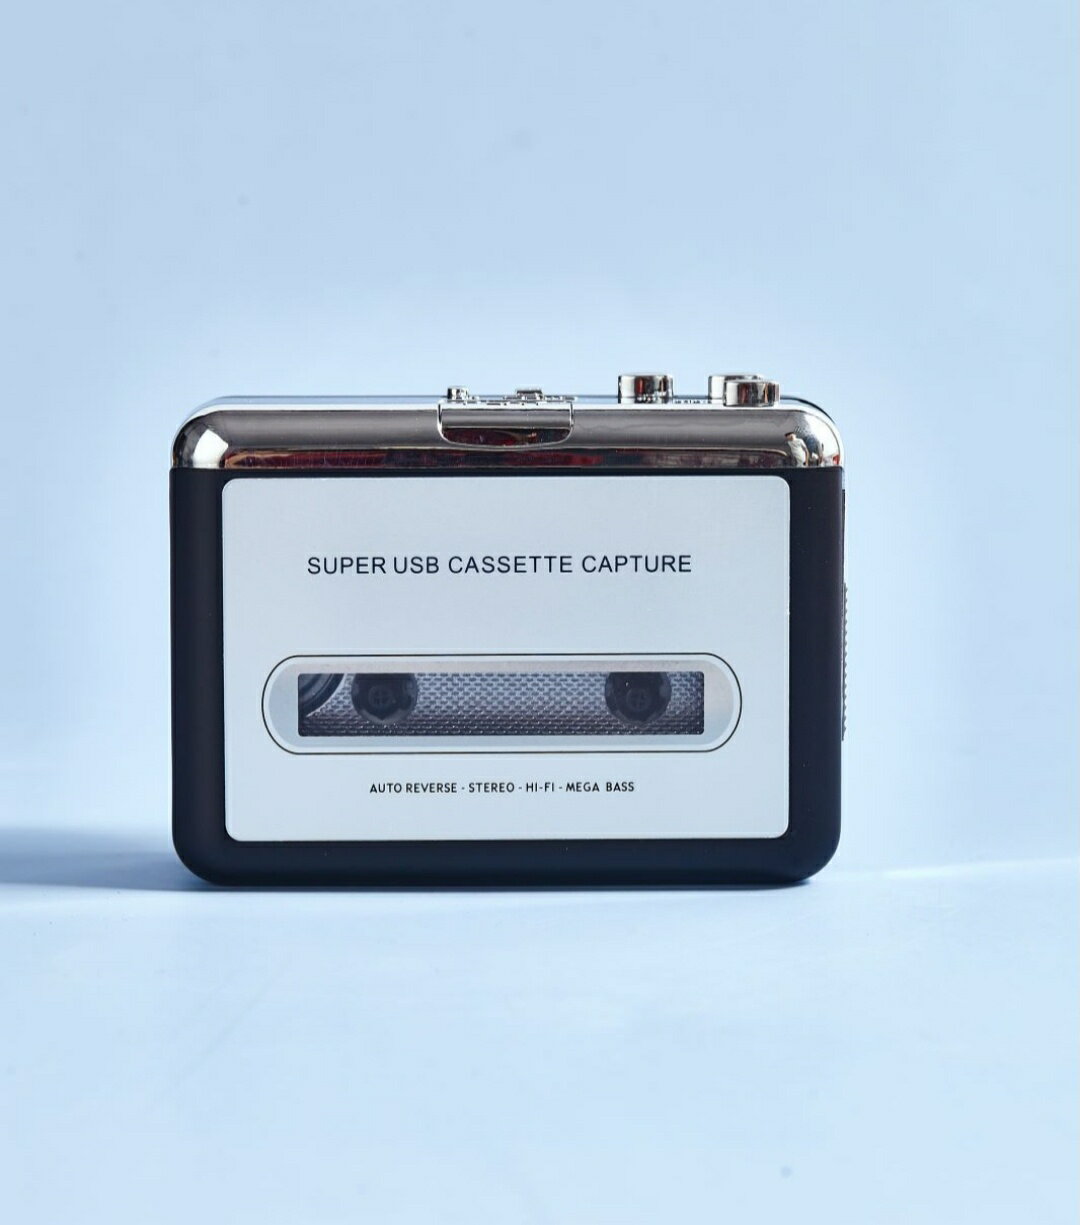 磁帶機 卡帶播放器 磁帶機 隨身聽老式播放卡帶機 器 電FM臺功能USB供電送懷舊EVA周杰倫喇叭 全館免運